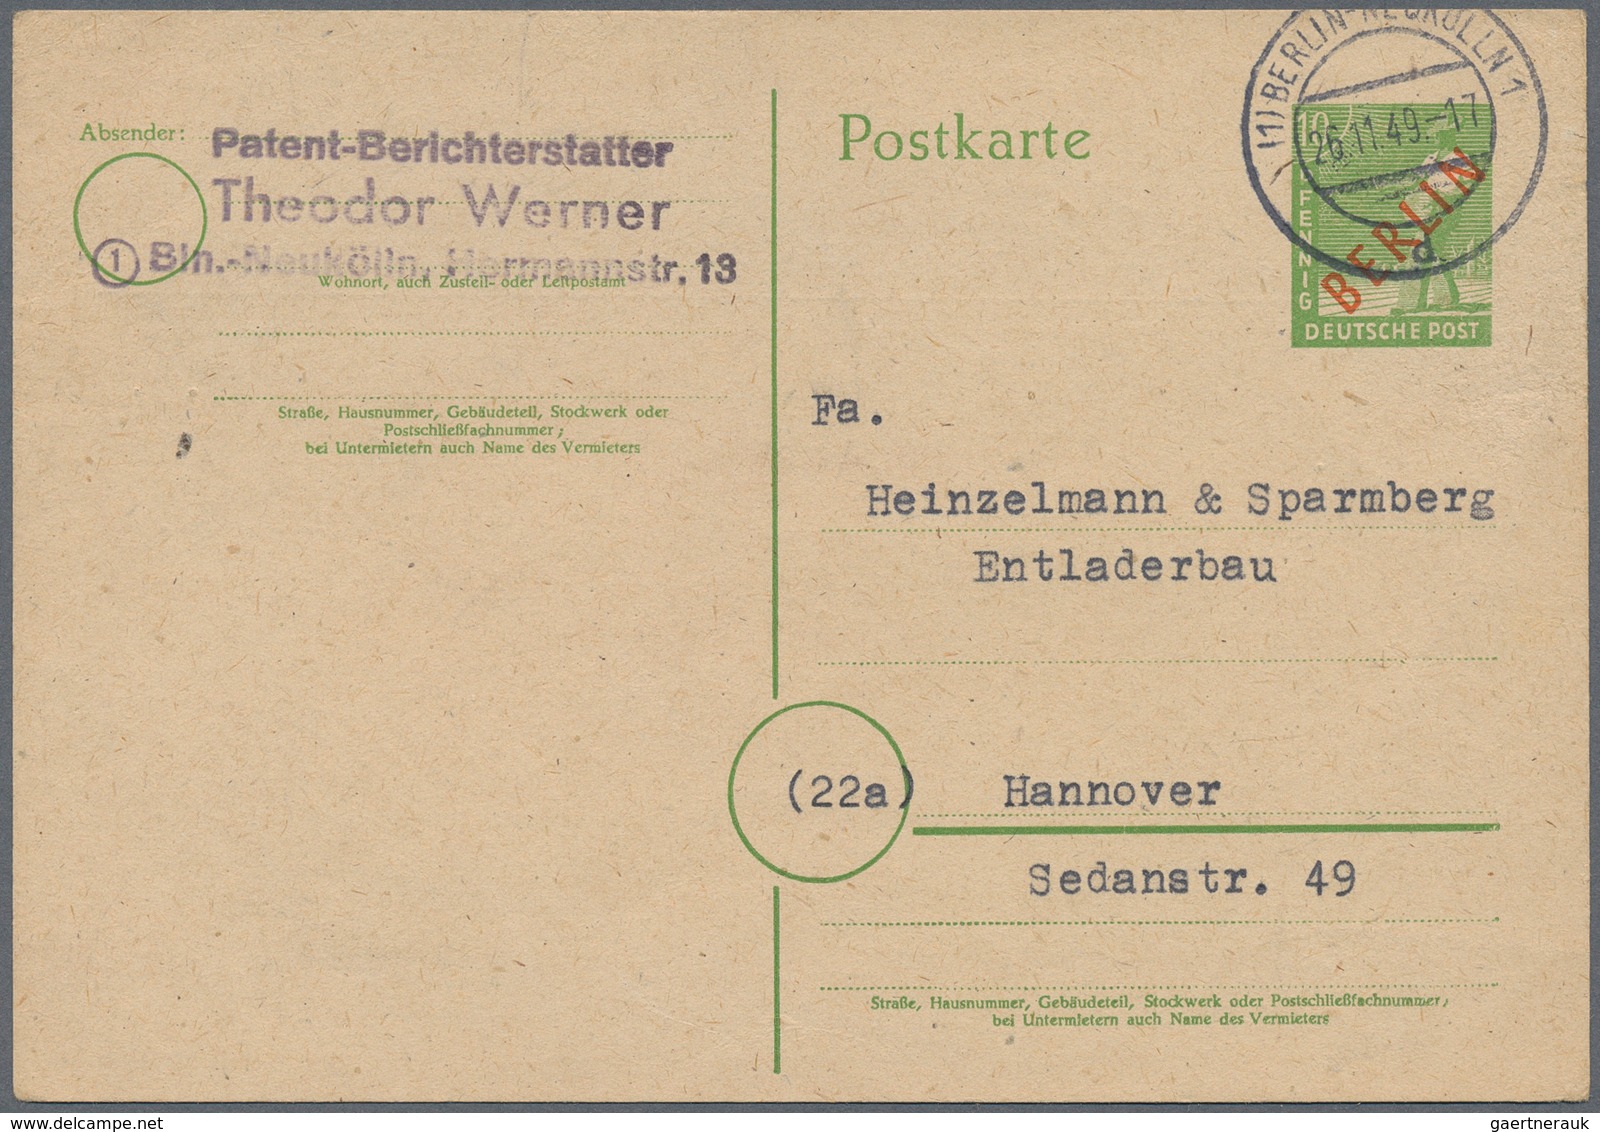 32485 Berlin: 1948/70 (ca.), Posten von ca. 38 aussergewöhnlichen (meist ehemalige Einzellos)-Belegen, nah